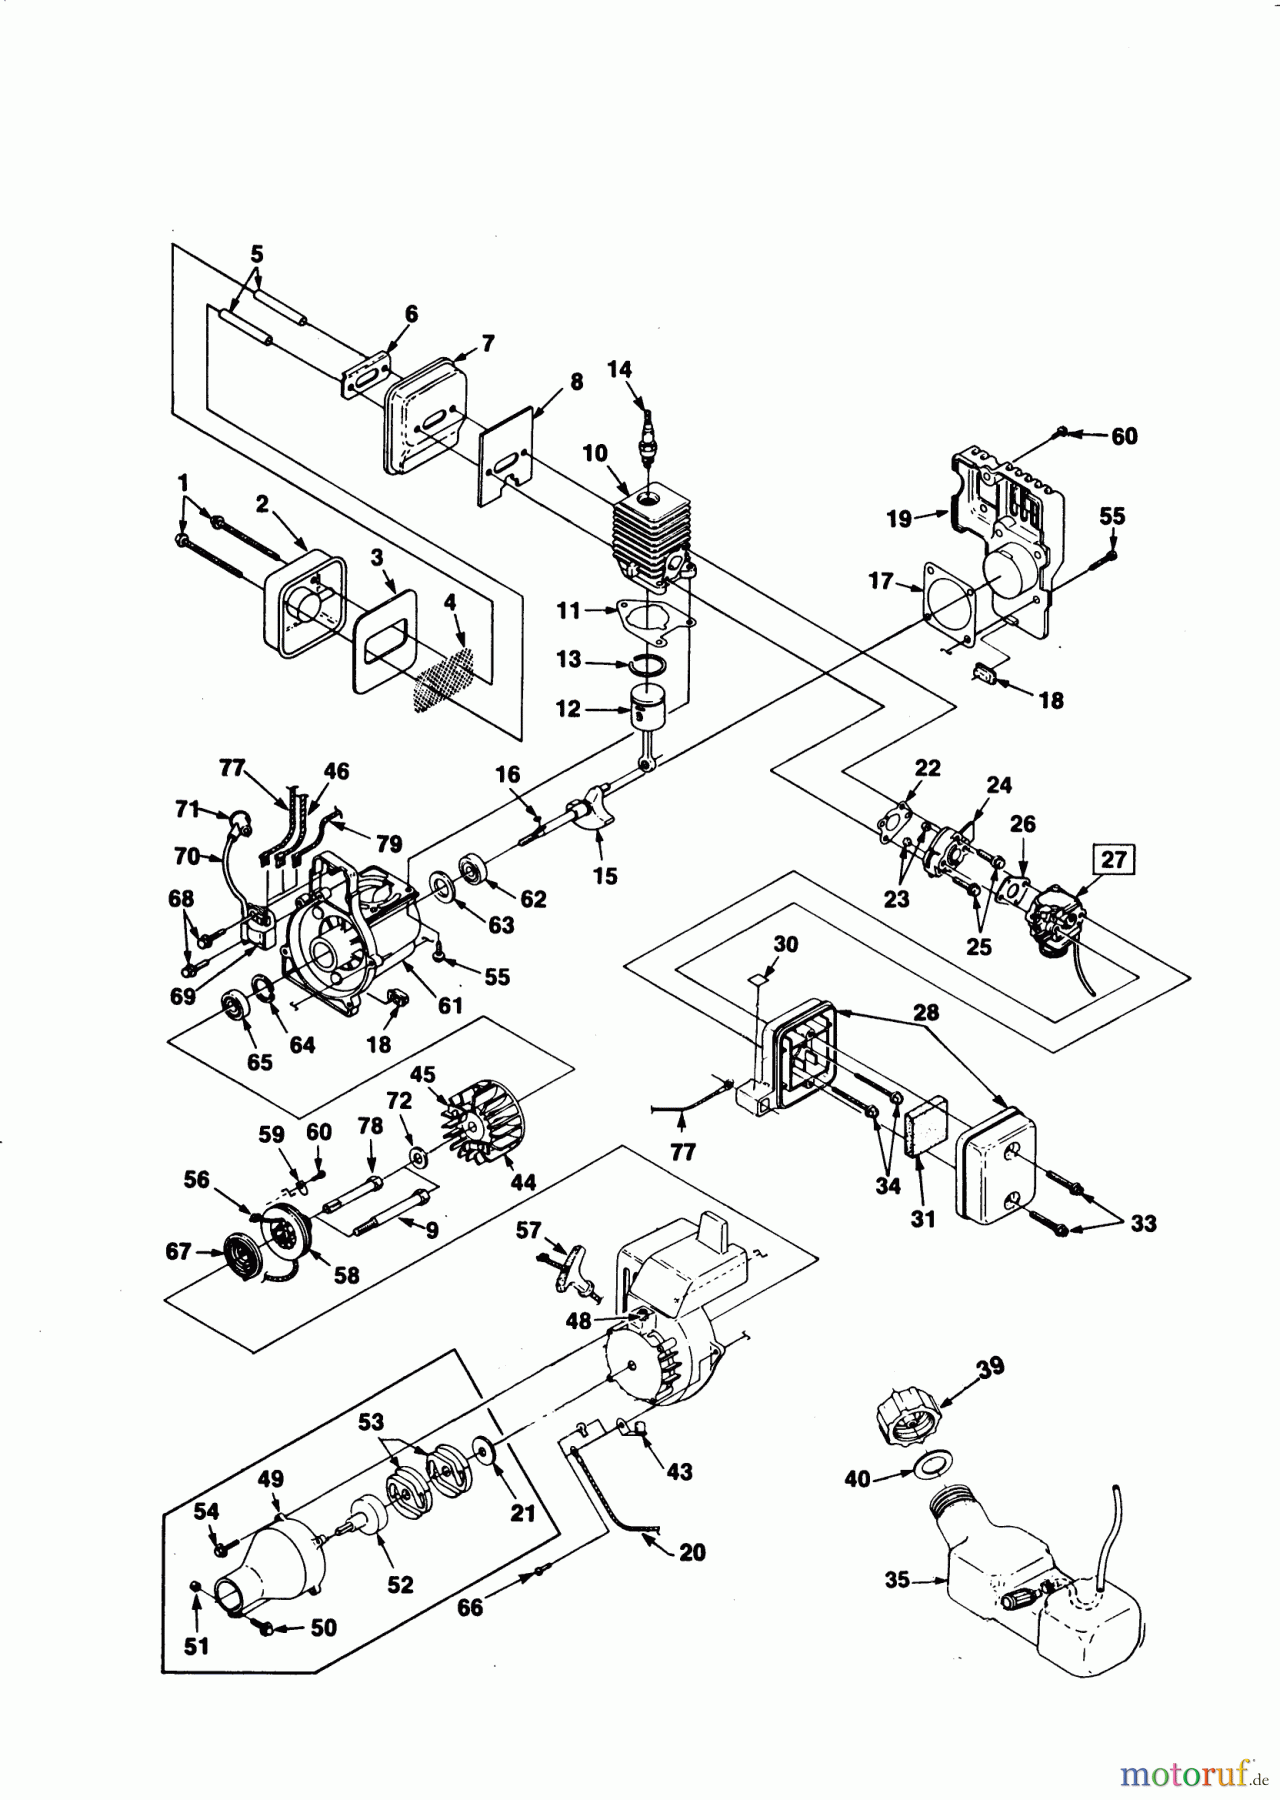  AL-KO Gartentechnik Motorsensen LT 250 C Seite 1